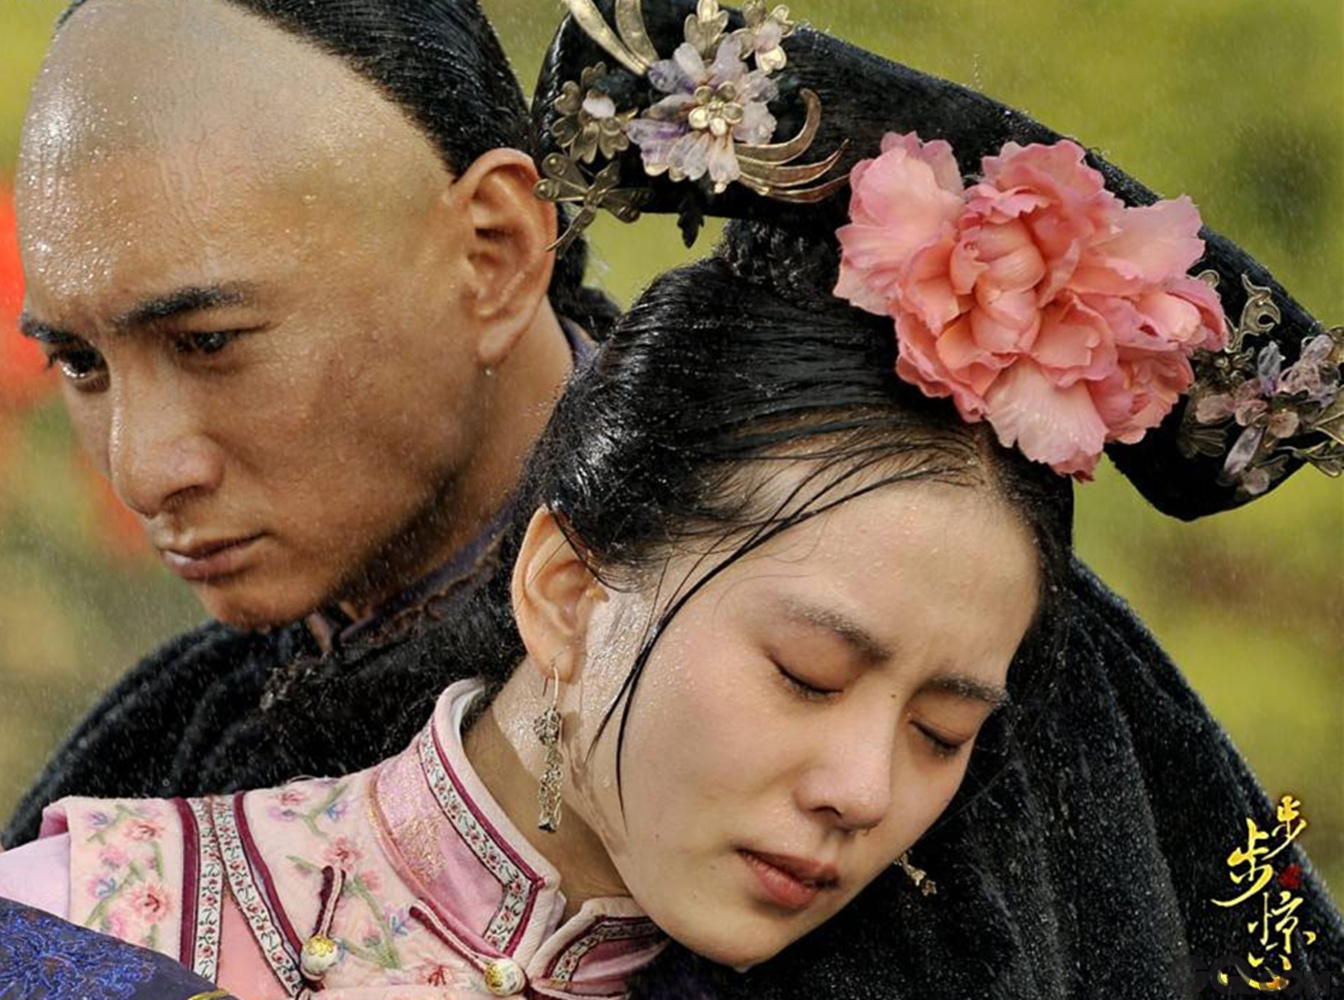 吴奇隆因出演《步步惊心》的深情“四爷”一角而走红，在戏里与饰演“若曦”的女星刘诗诗成为荧幕情侣。